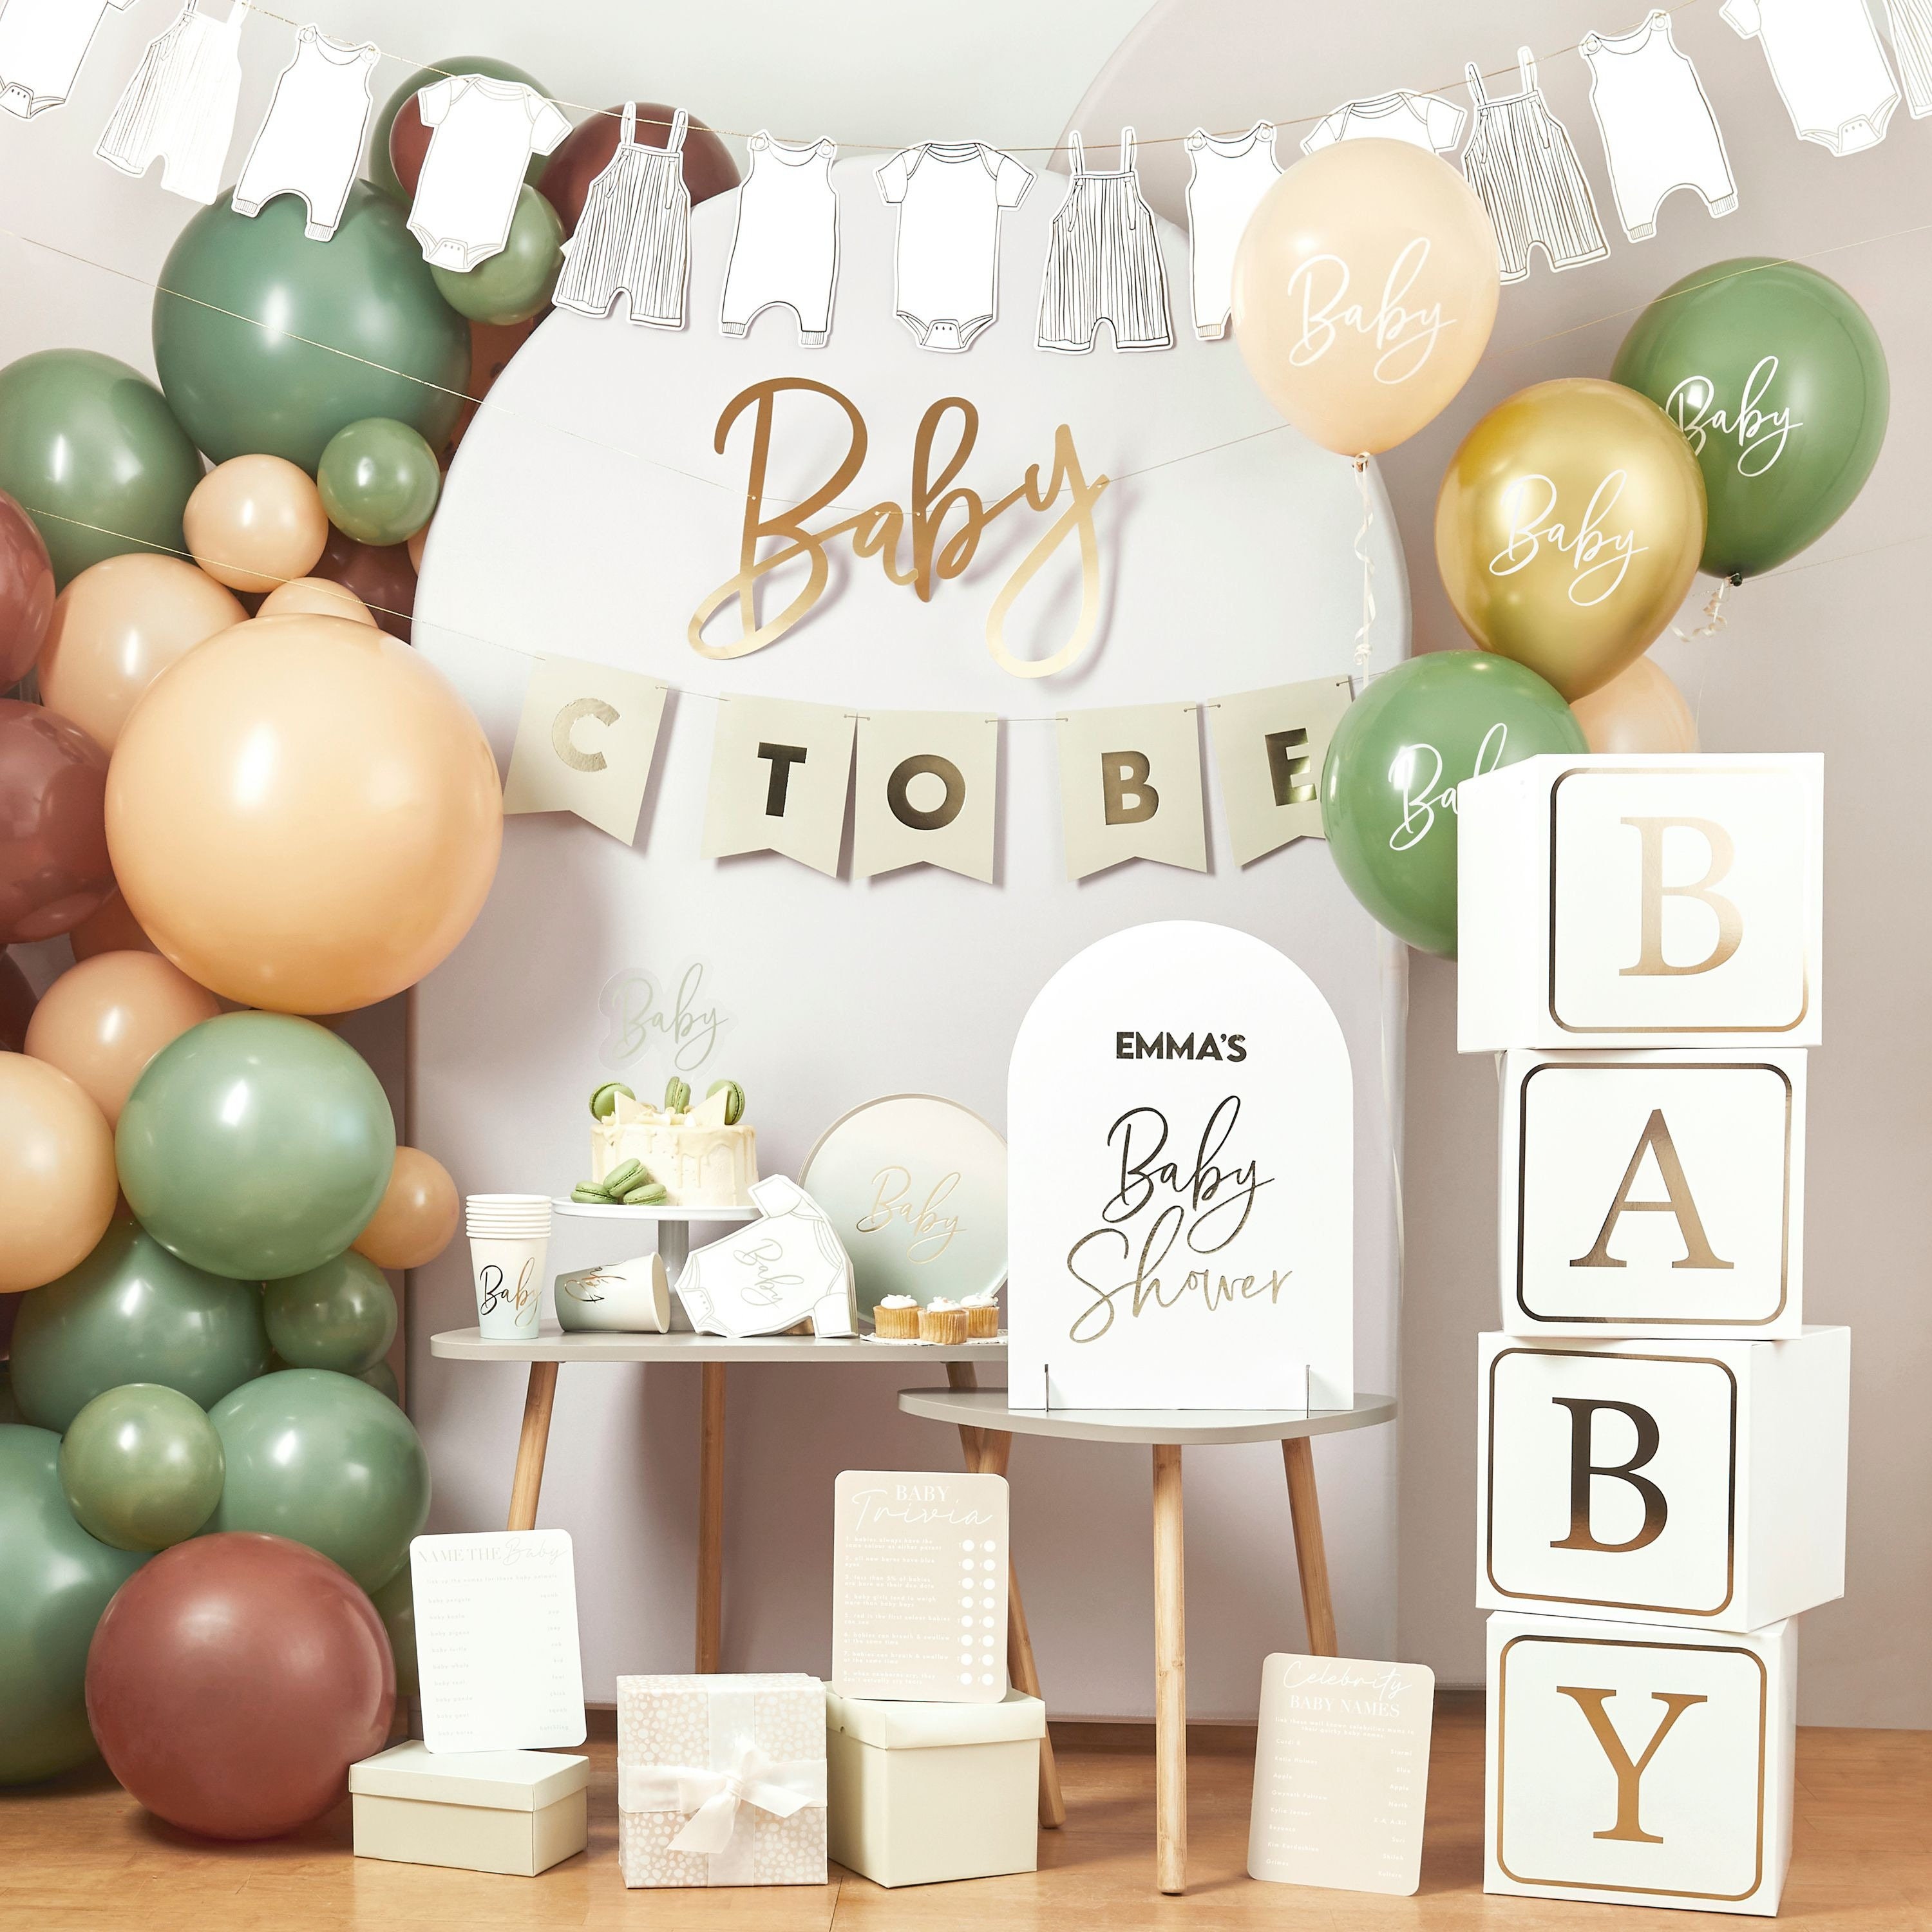 Decoración de Baby Shower Decoración con atrapasueños, globos